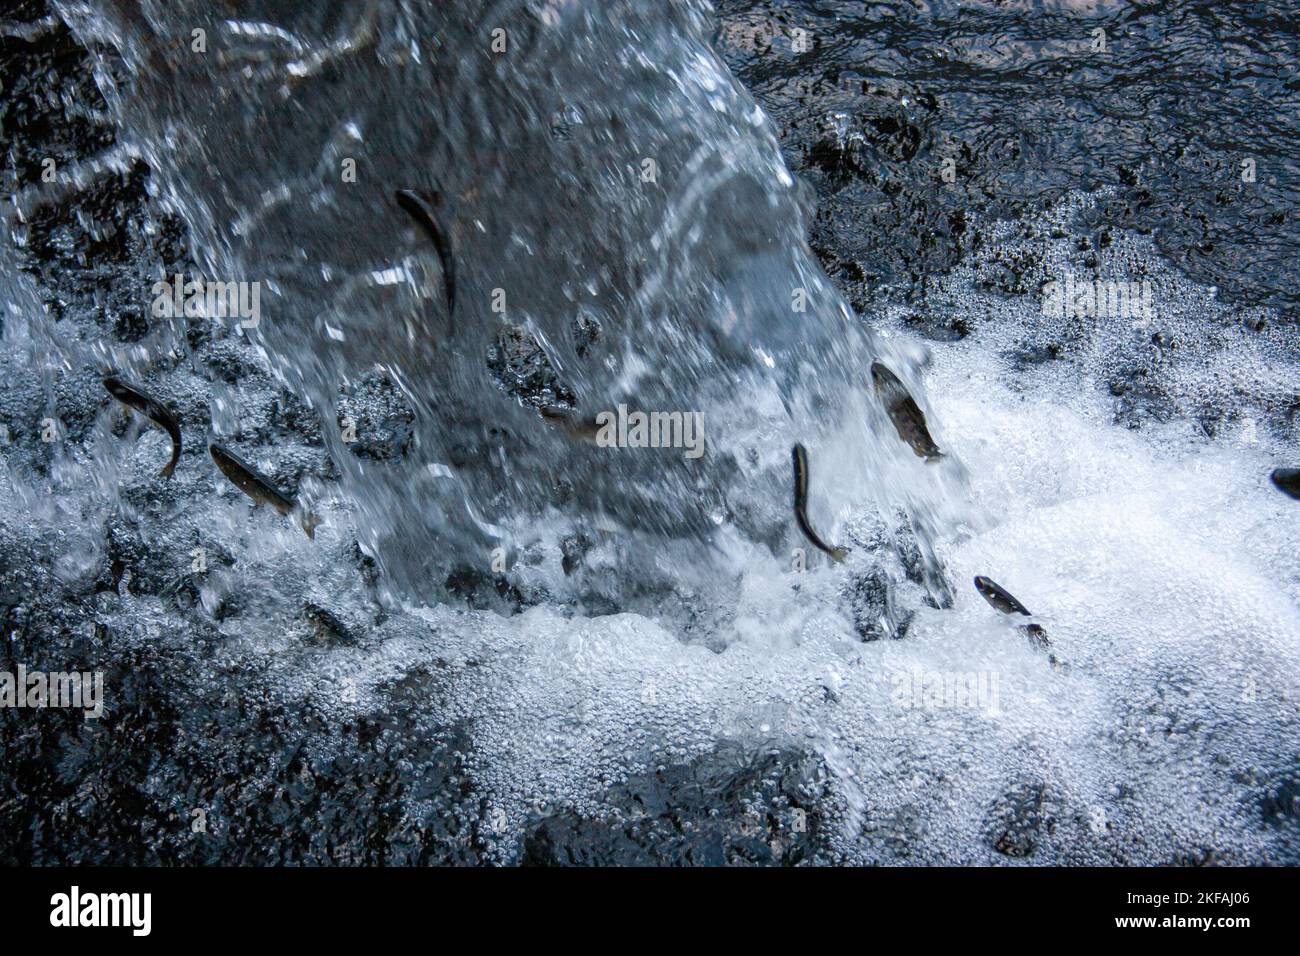 Truite sautant l'eau en cascade dans un ruisseau photographié dans les montagnes du Taurus, golfe d'Antalya. Péninsule anatolienne, Anatolie, Turquie Banque D'Images